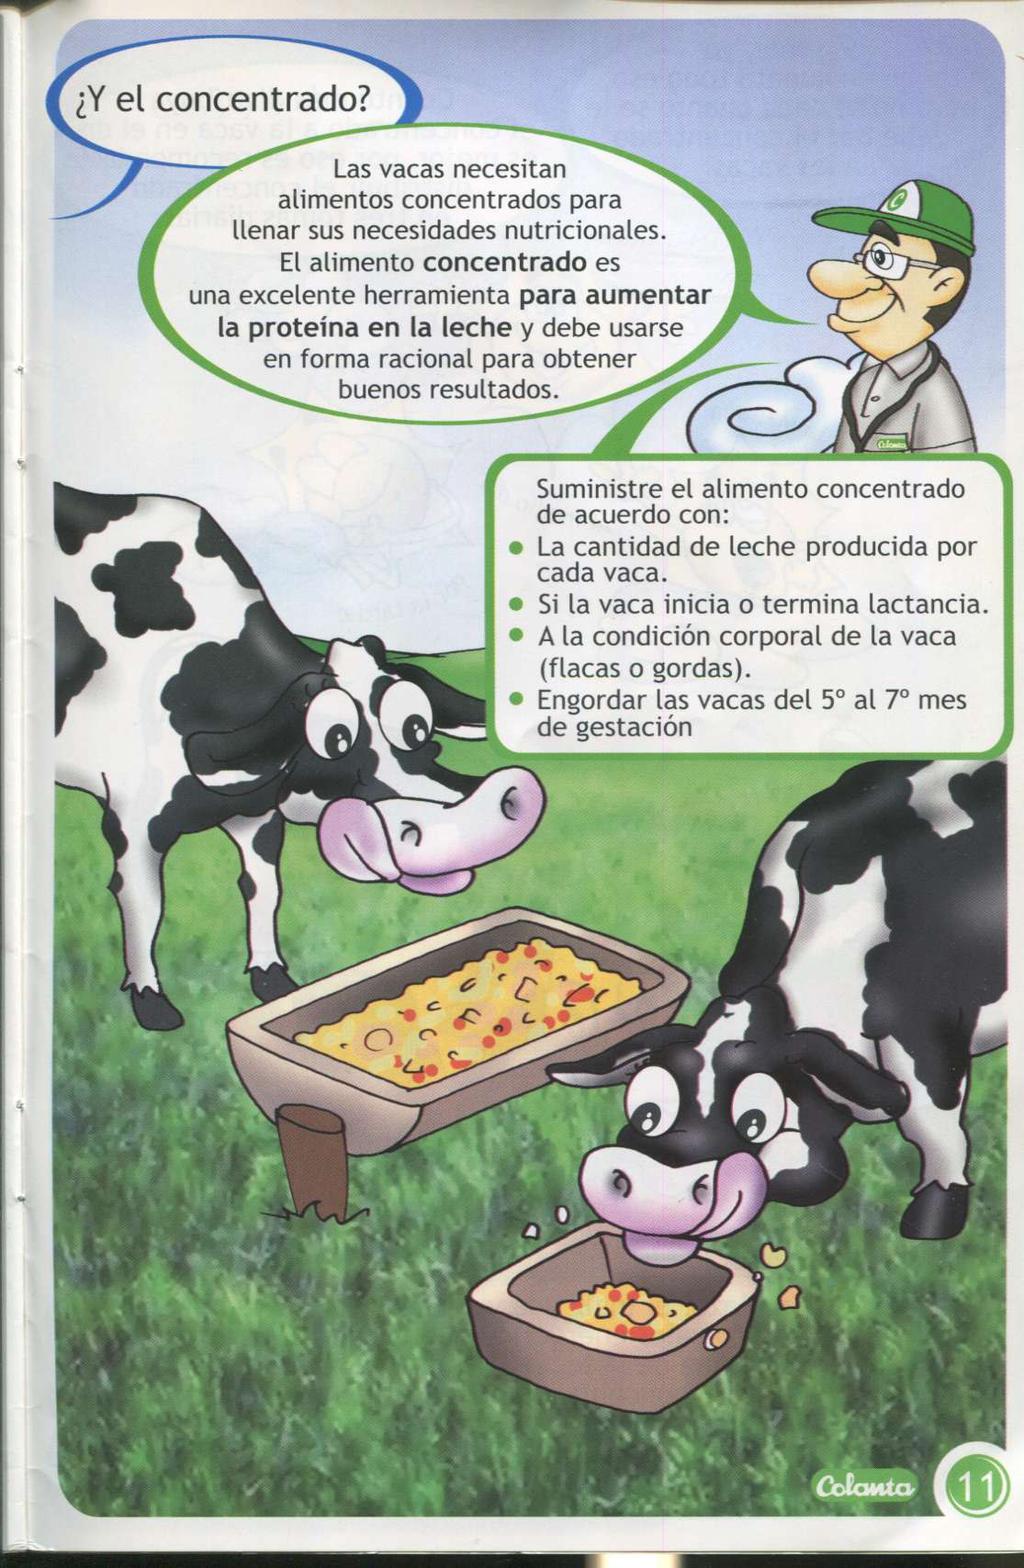 Y el concentrado? Las vacas necesit an aliment os concent rados para llenar sus necesidades nut ricionales.